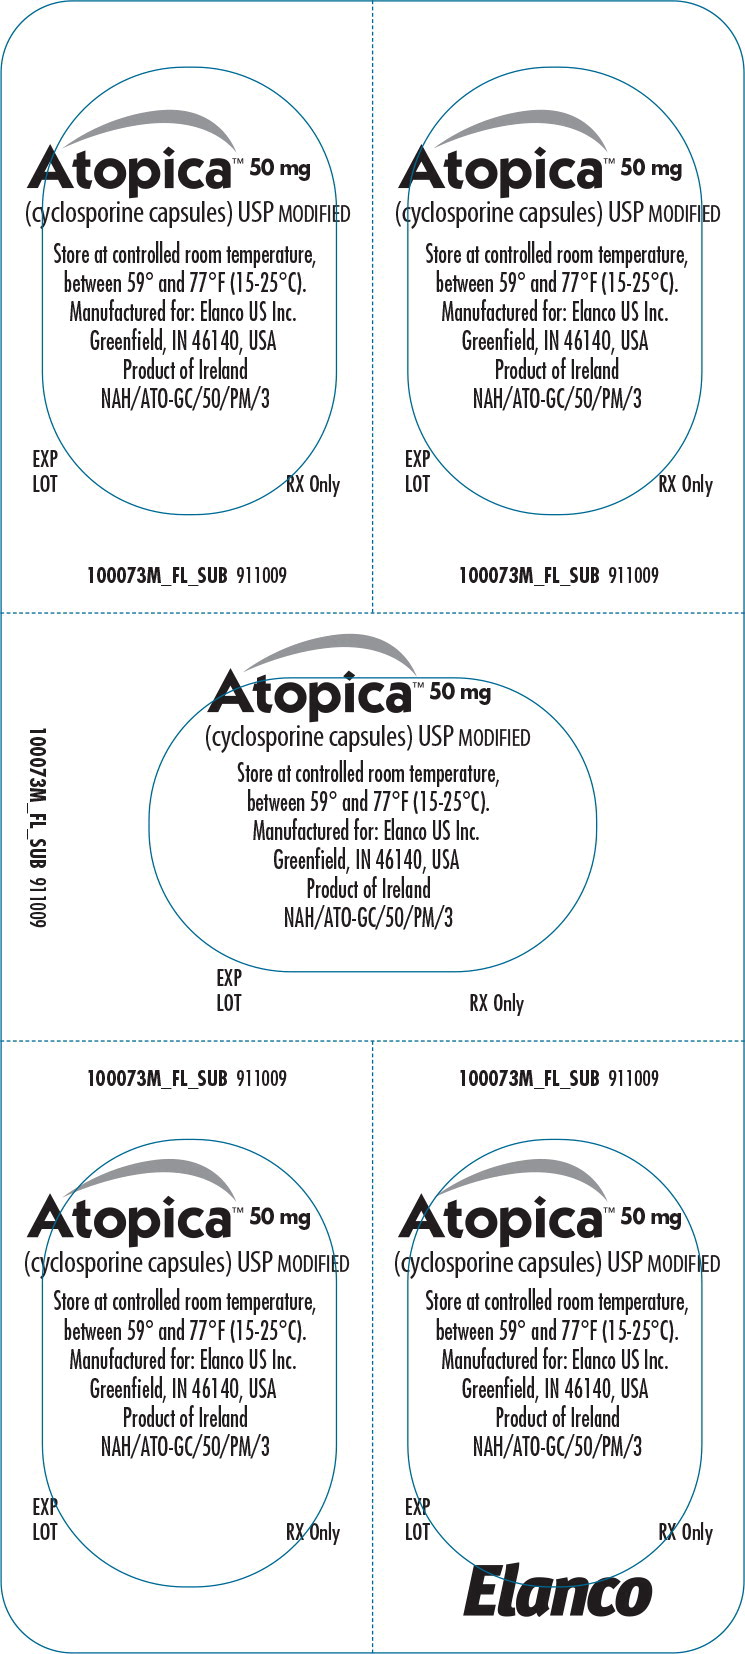 Principal Display Panel - Atopica 50mg Blister Label
